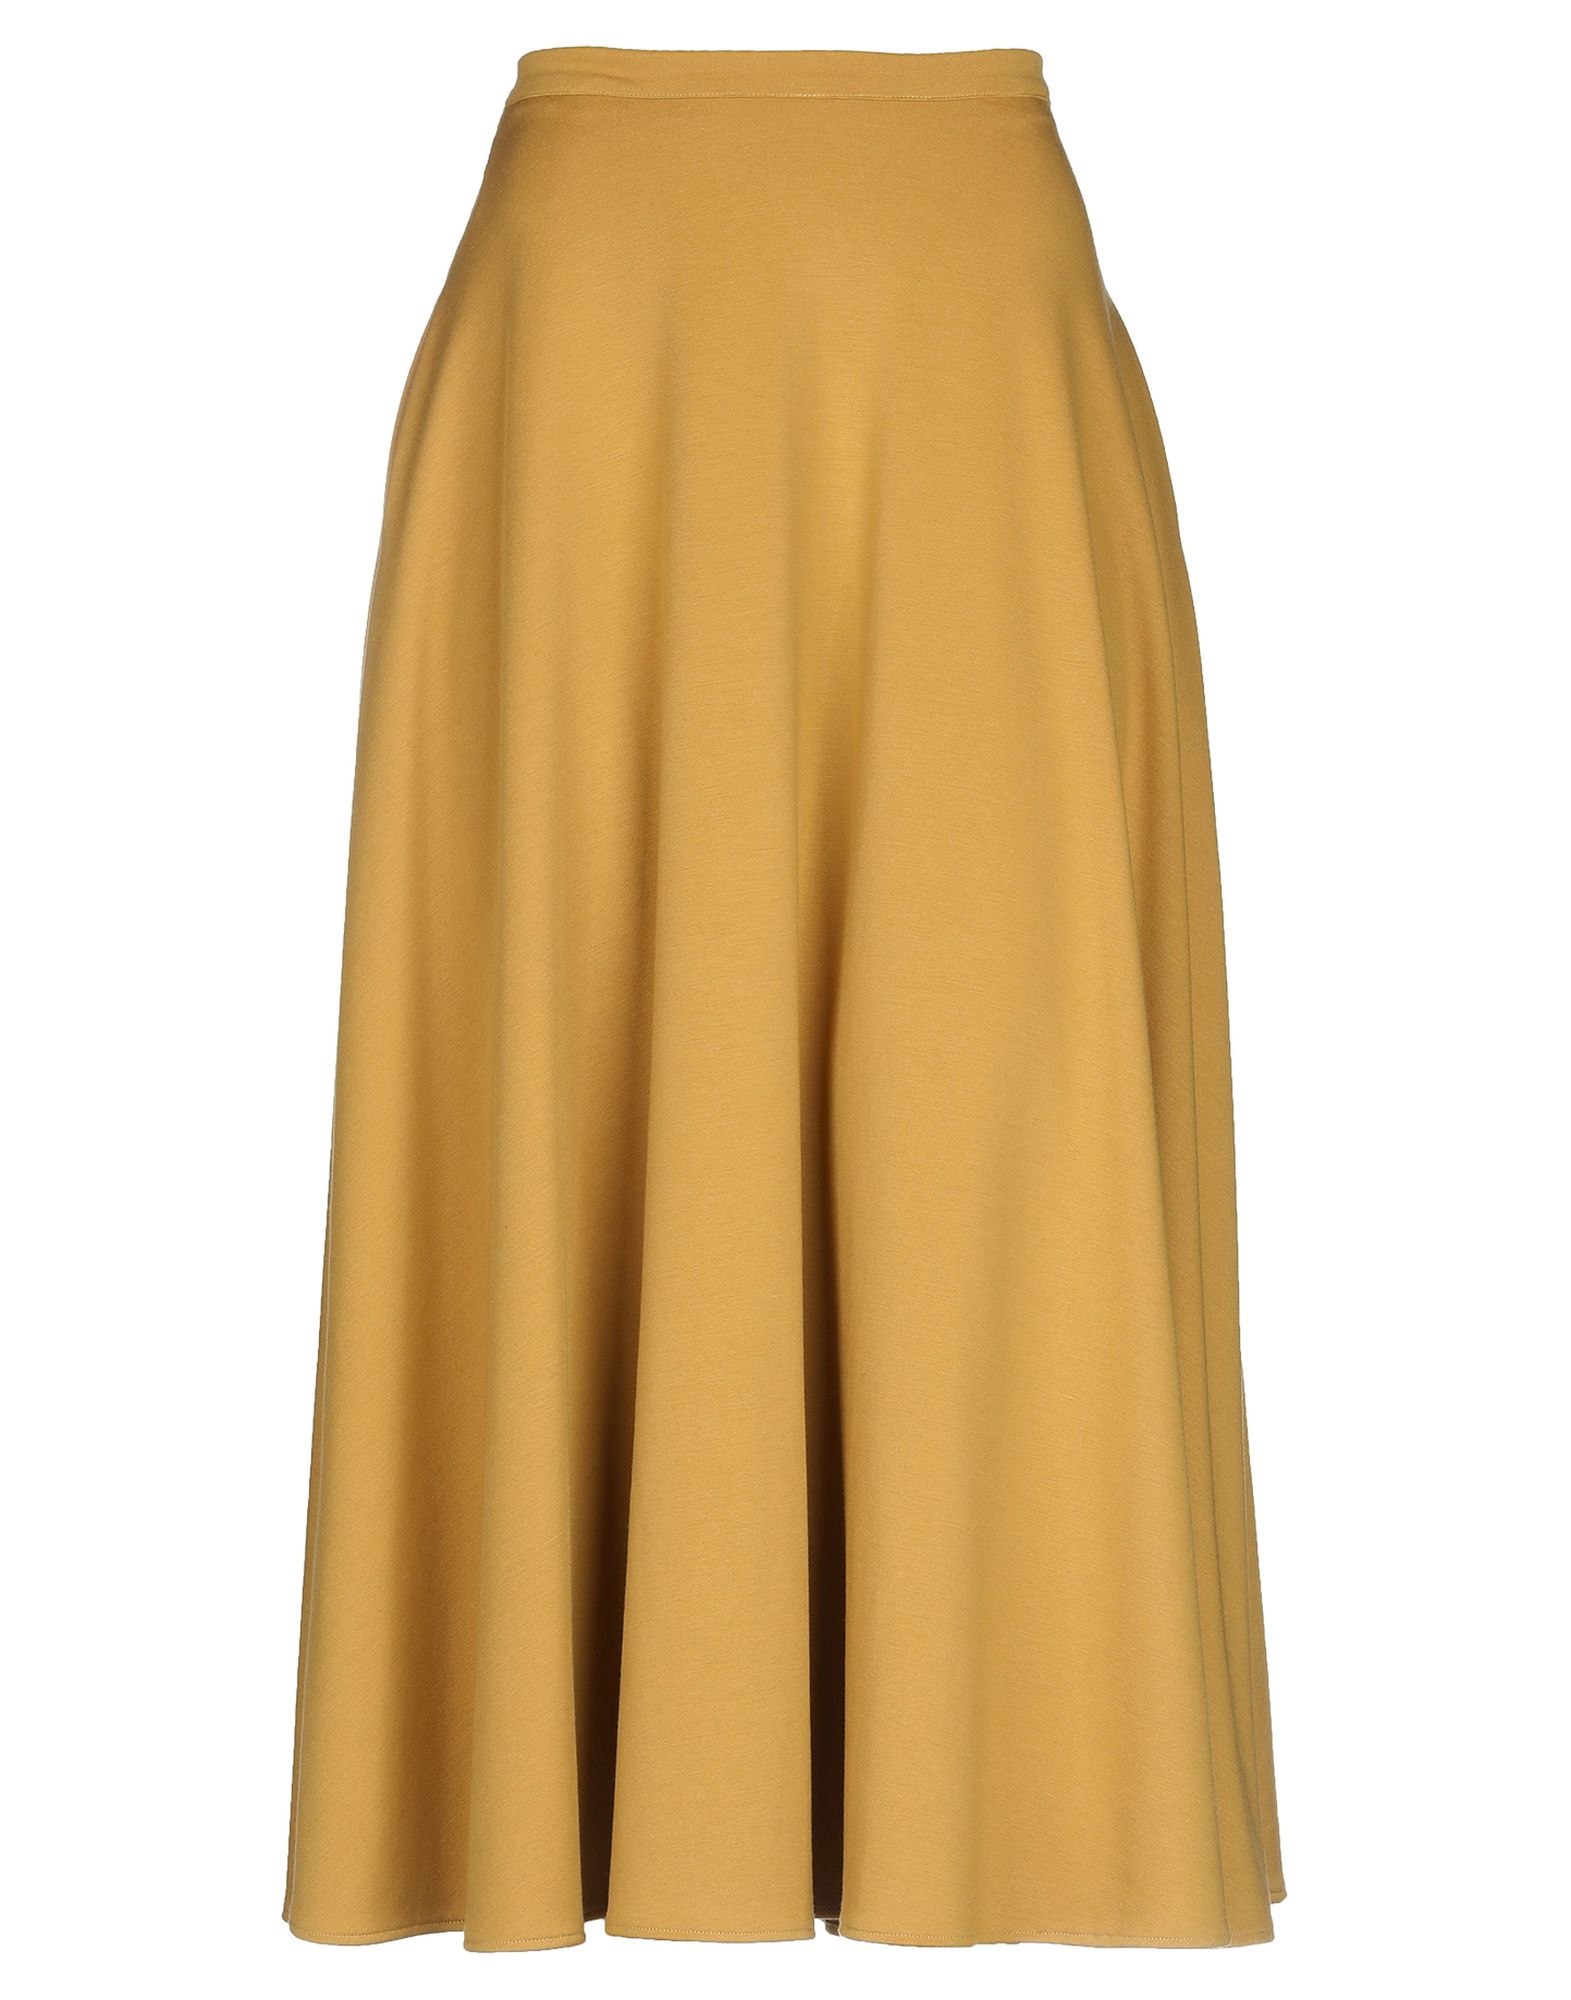 Длинная юбка  - Желтый цвет